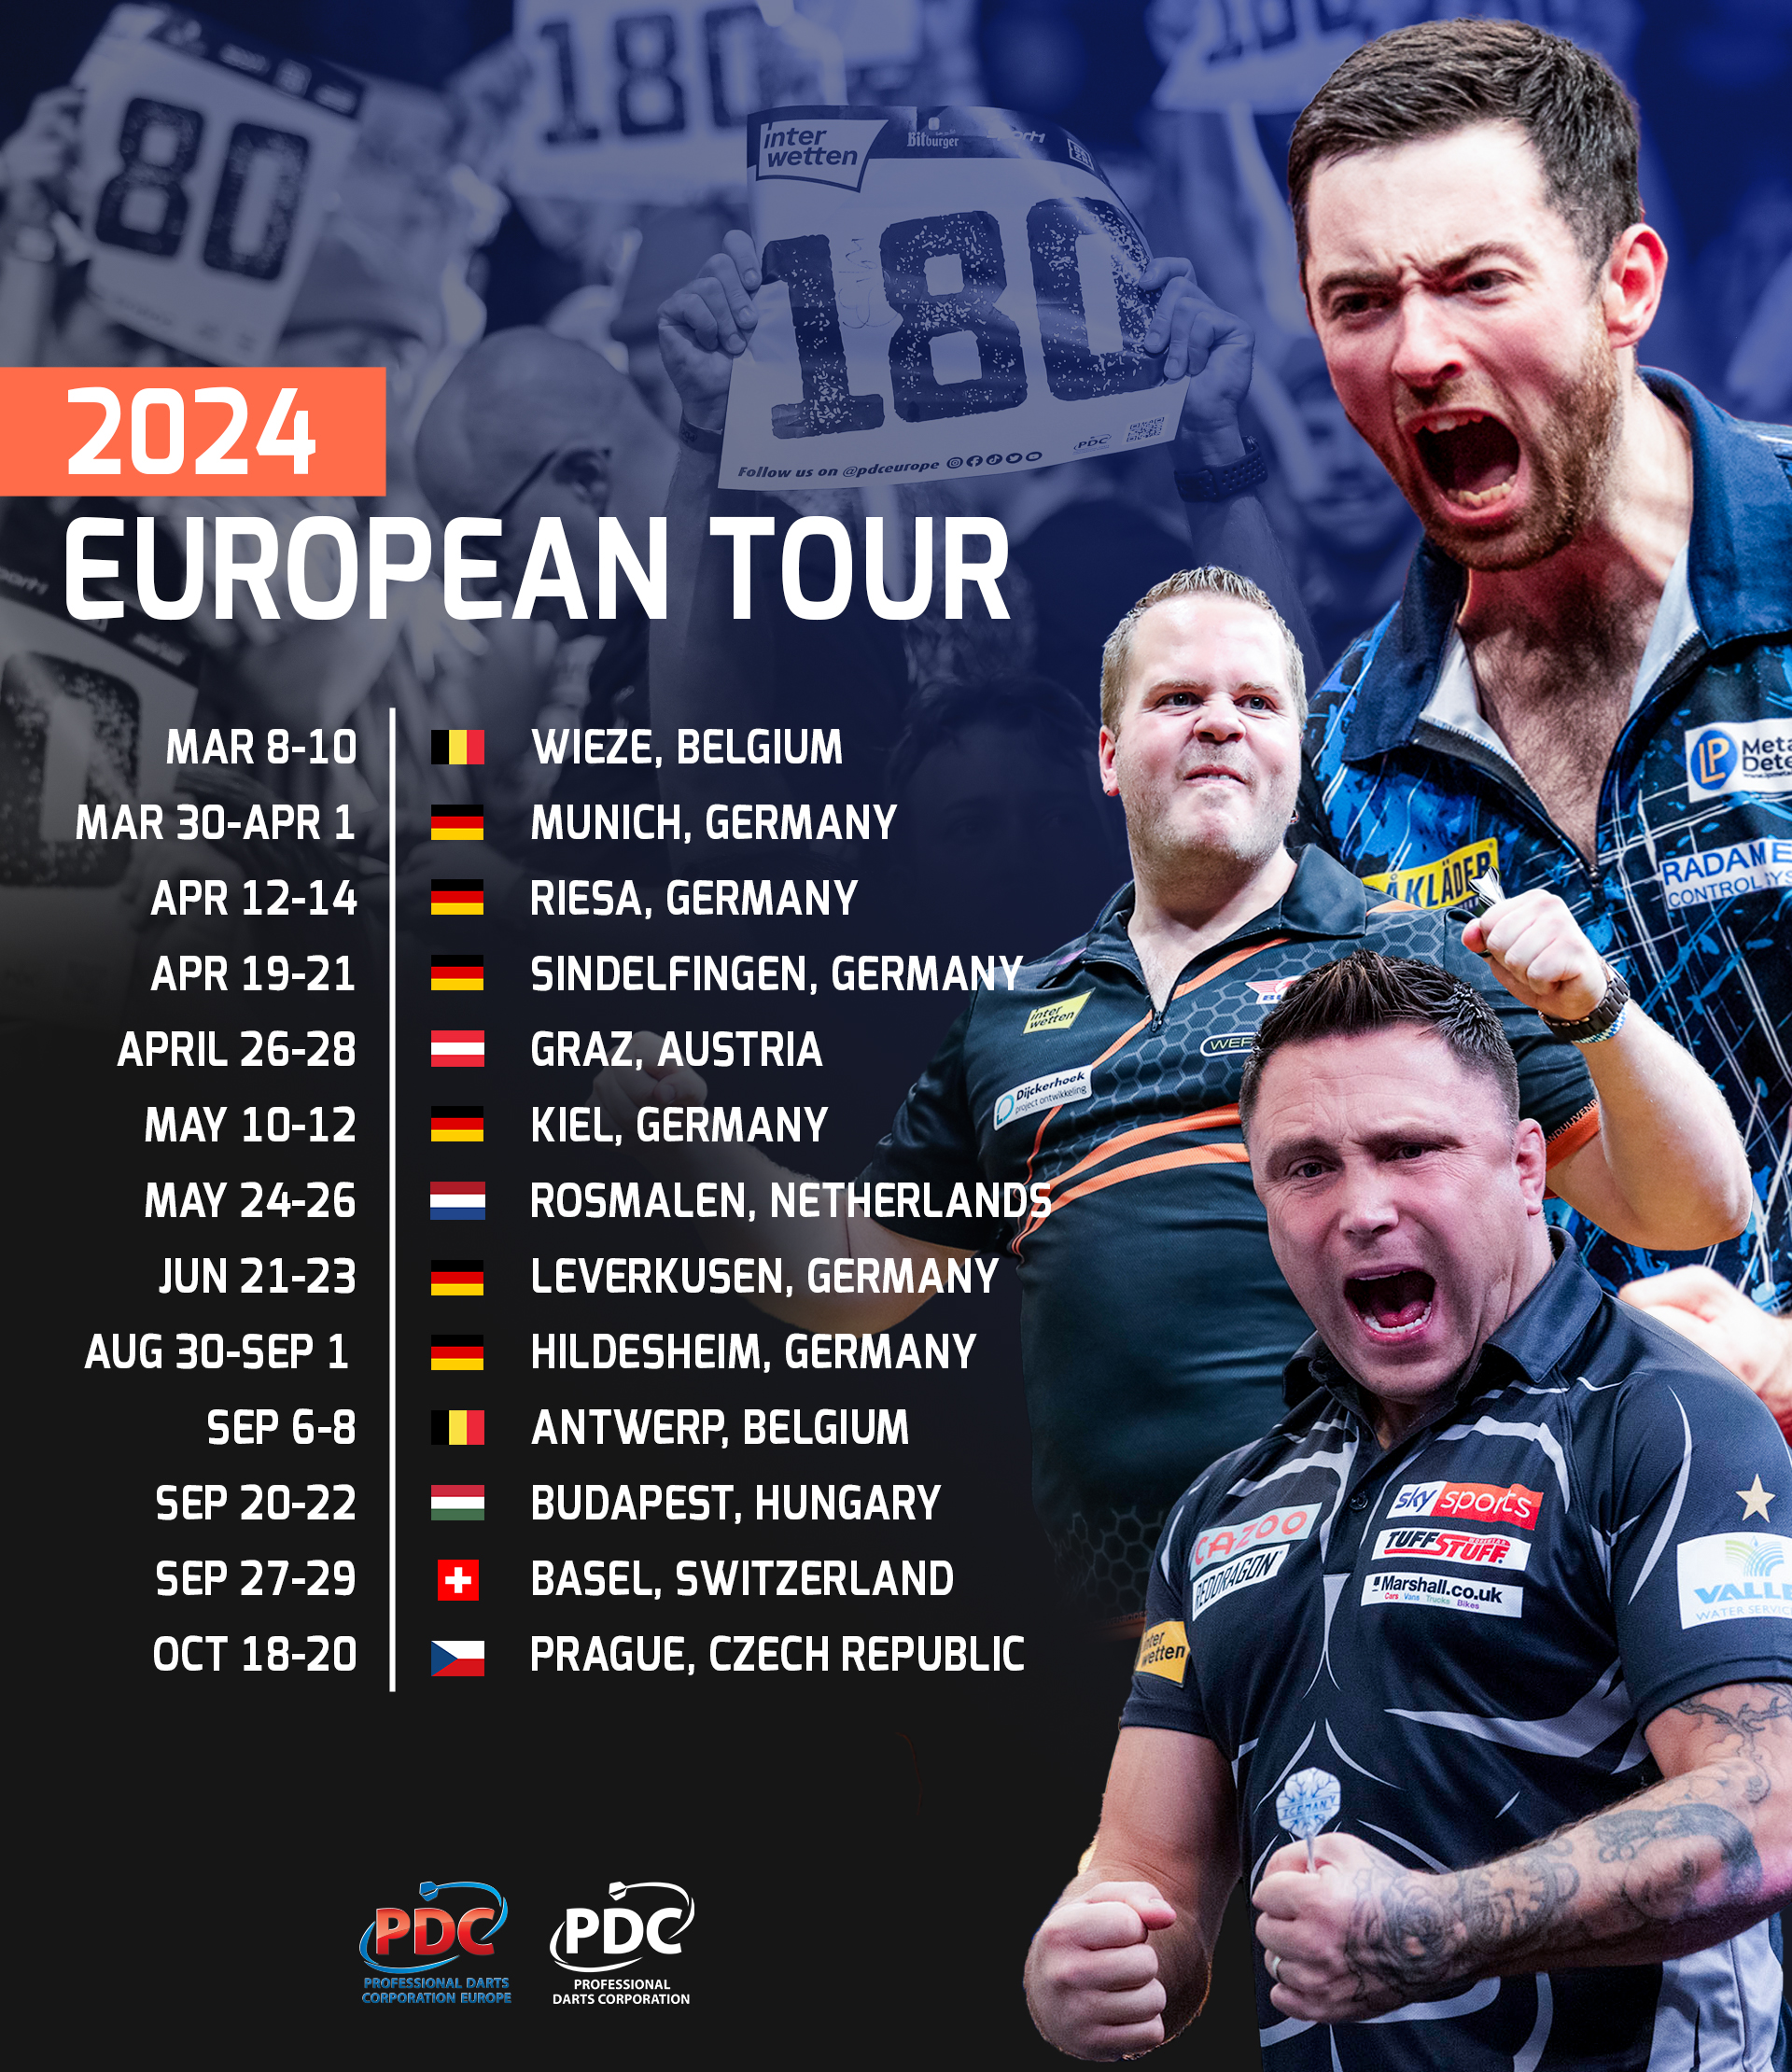 2024 European Tour dates